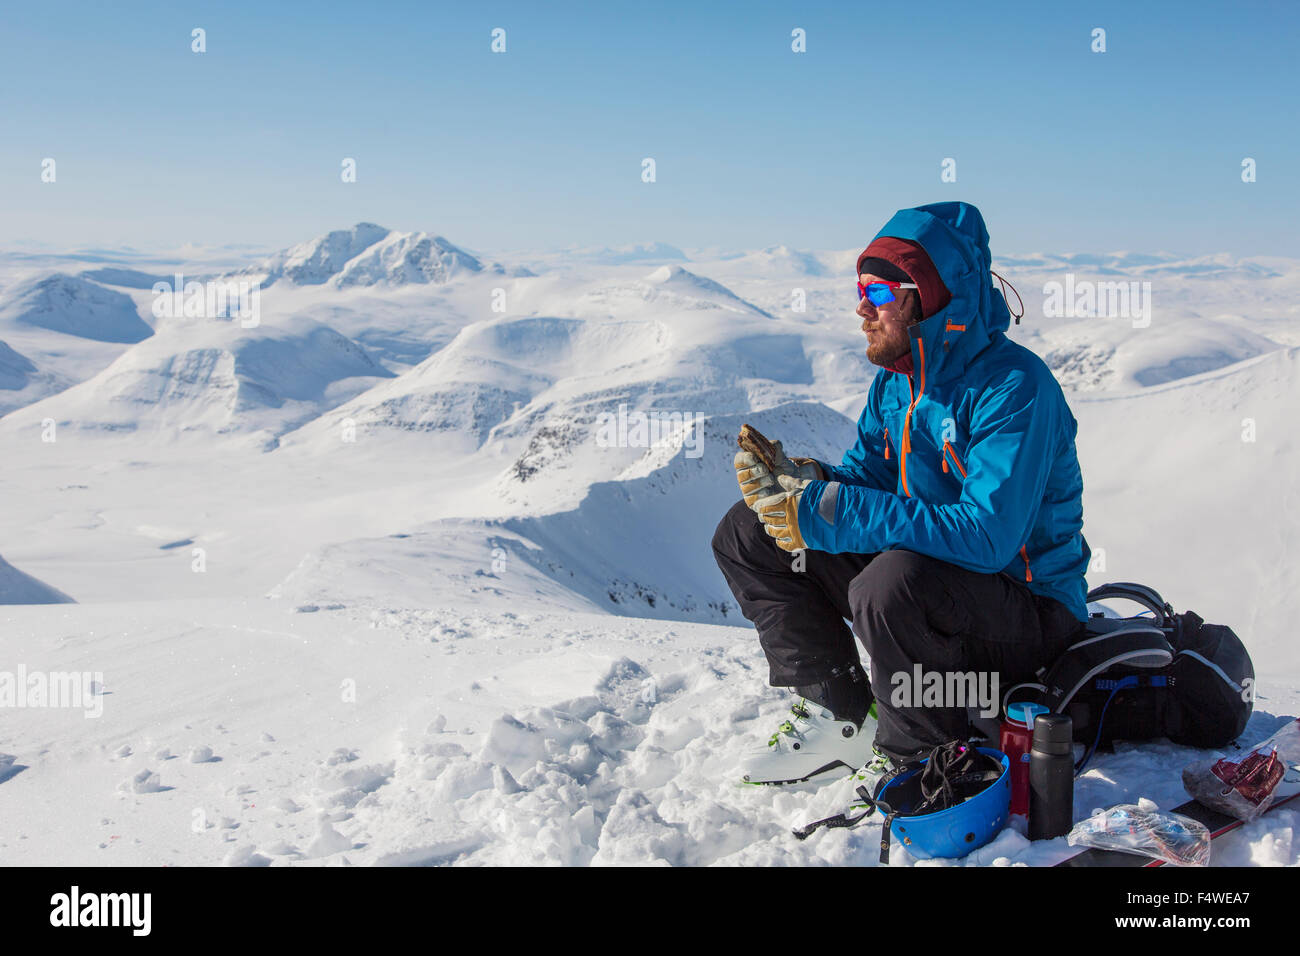 Man ski mountaineering Stock Photo